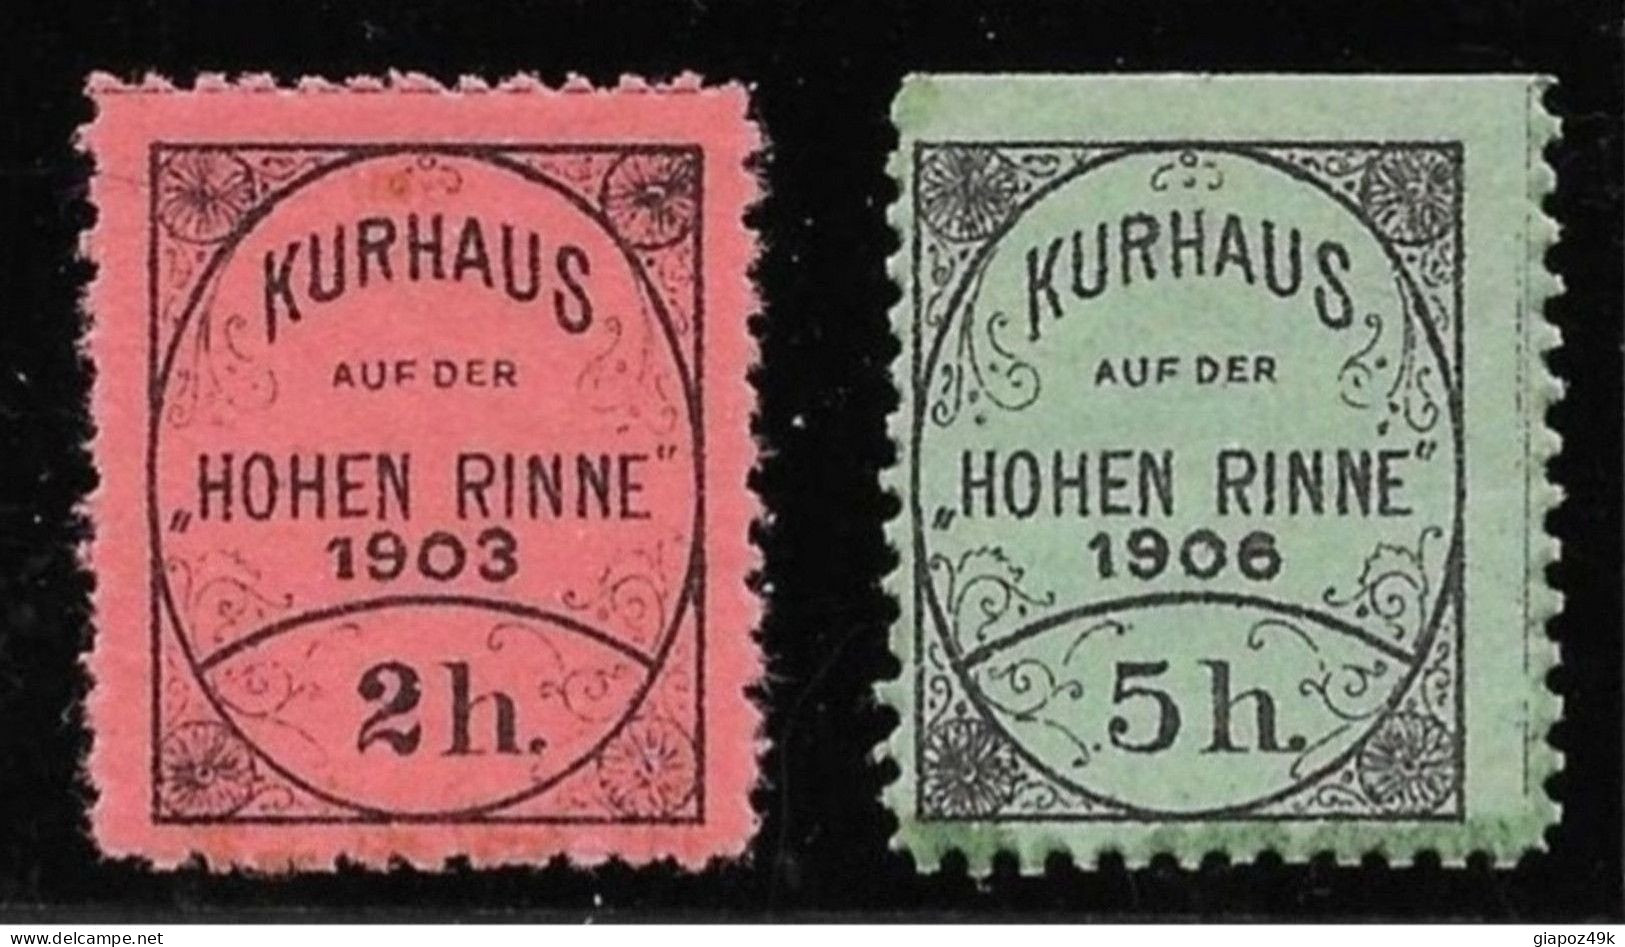 ● ROMANIA 1903 E 1906 ● KURHAUS ֍ HOHEN RINNE ֍ Posta Privata ● 2 H.* E 5 H.* ● Cat. ? € ● L. XXX ● - Local Post Stamps